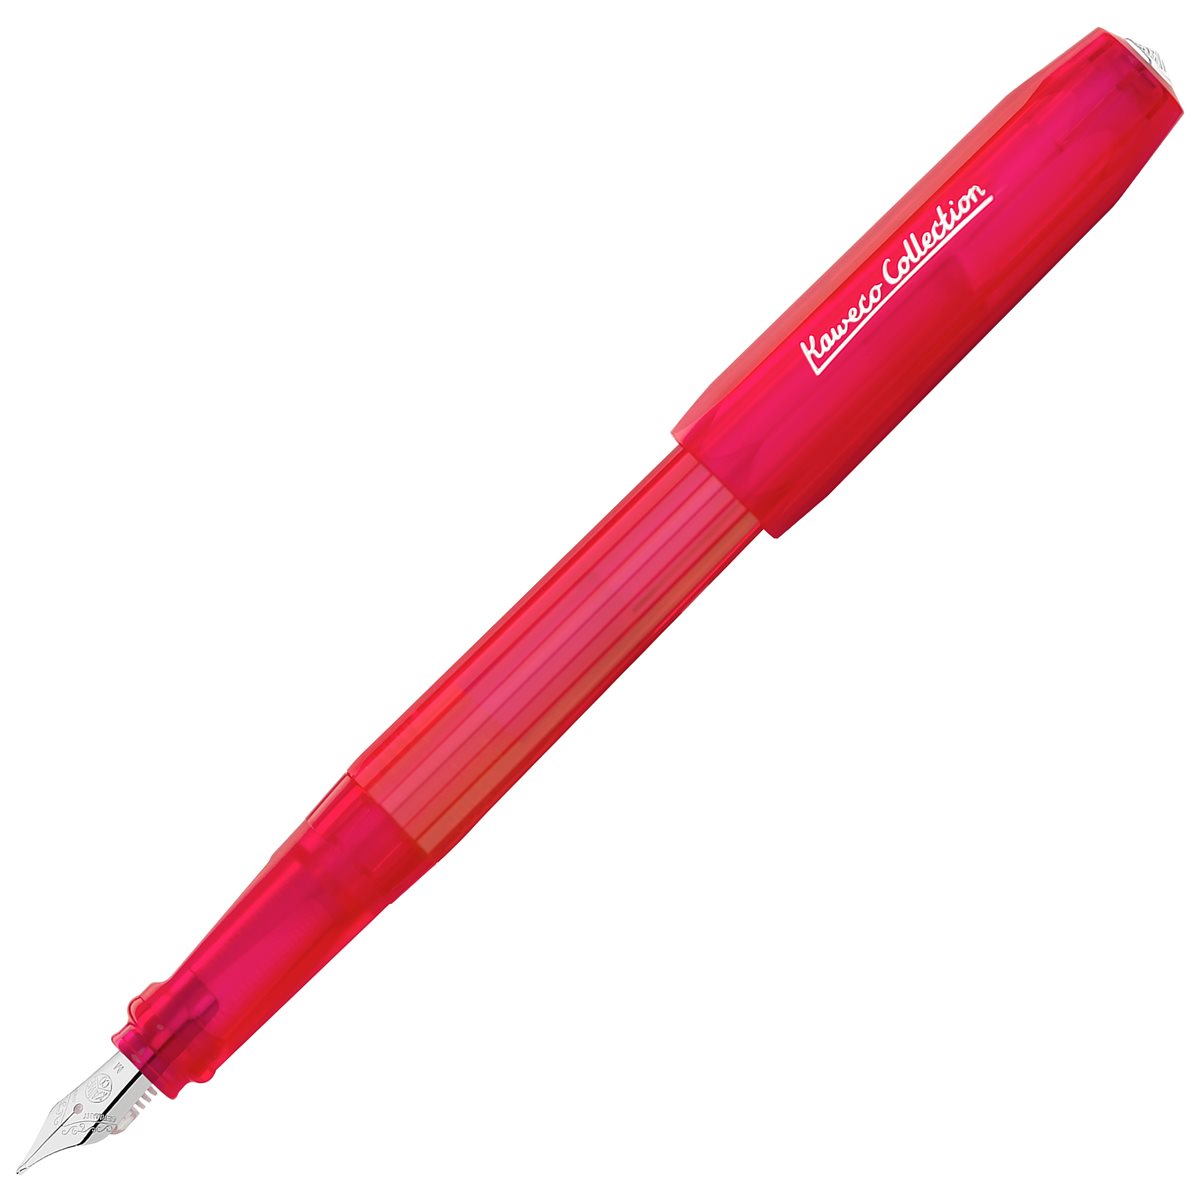 Kaweco COLLECTION Perkeo Infrared Fountain Pen